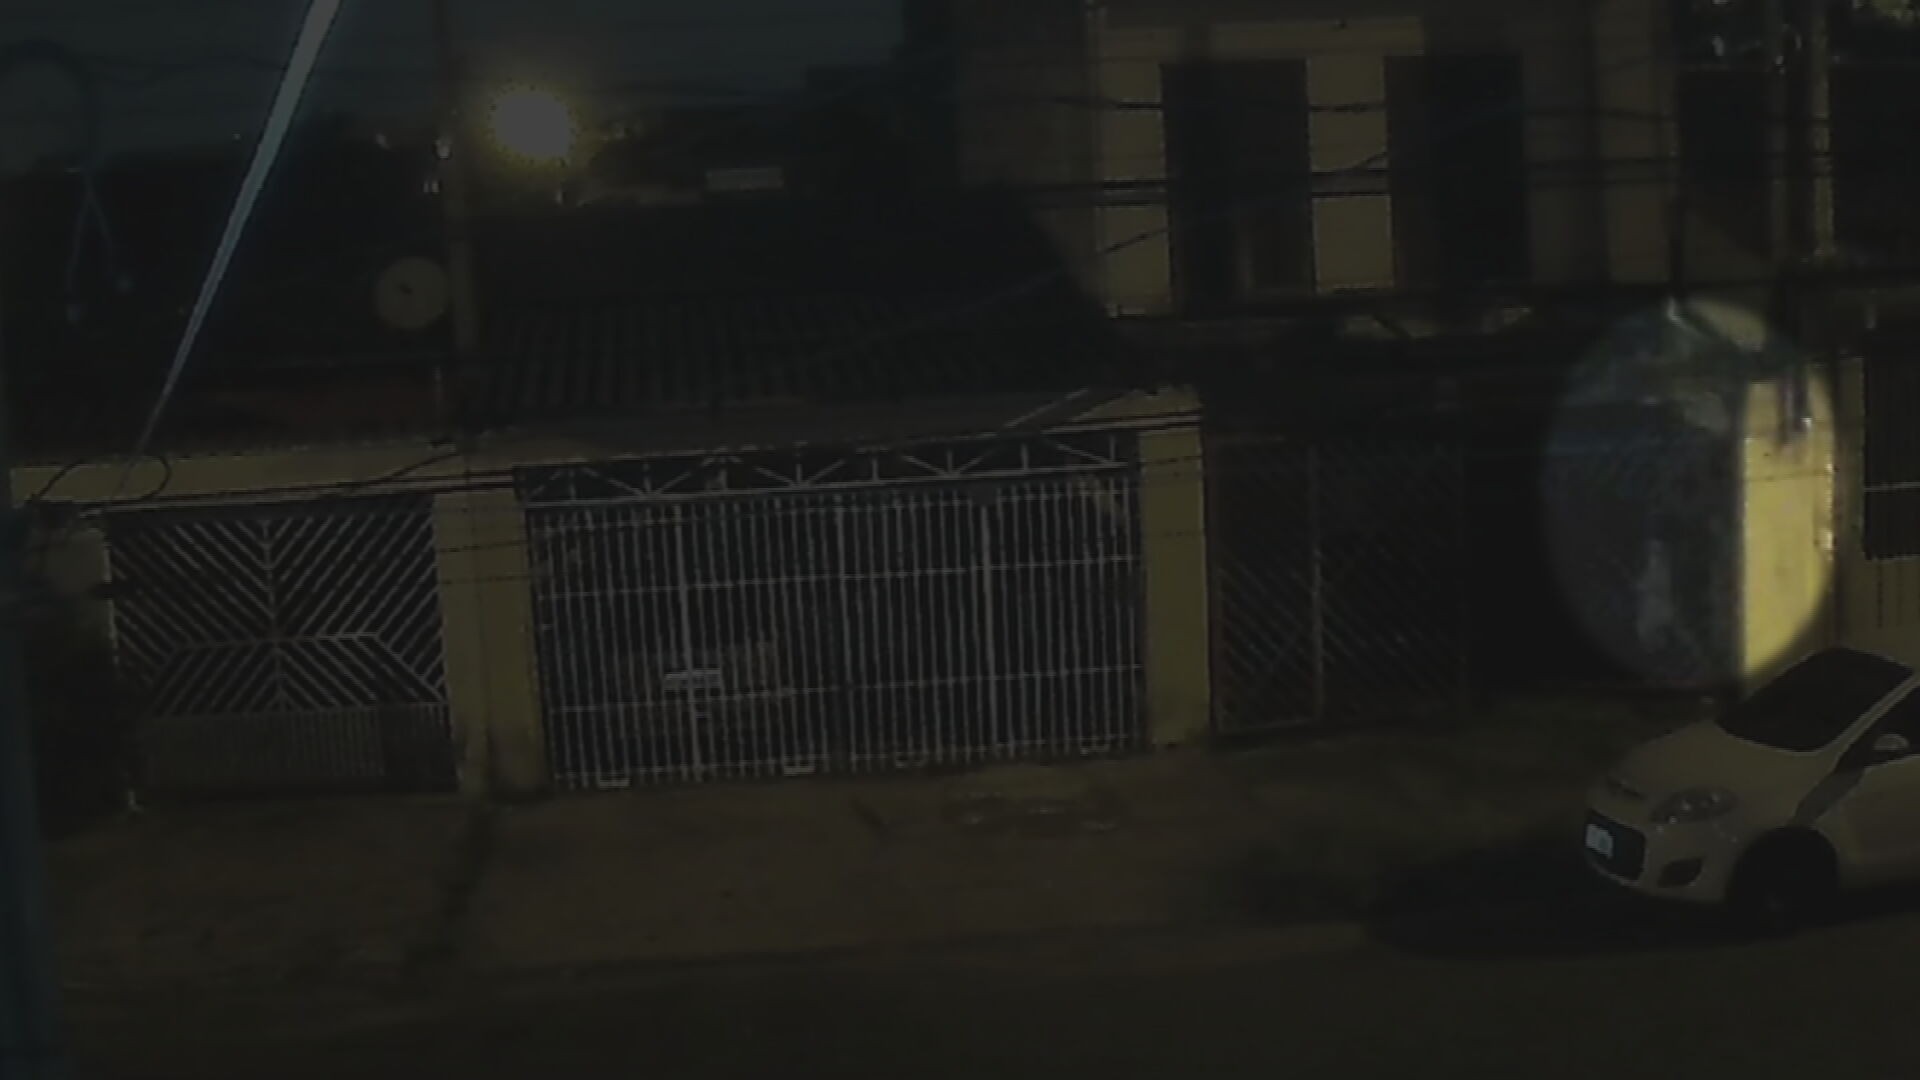 VÍDEO: morador abre portão para entrar em casa e é surpreendido por ladrão escondido em caixa de força